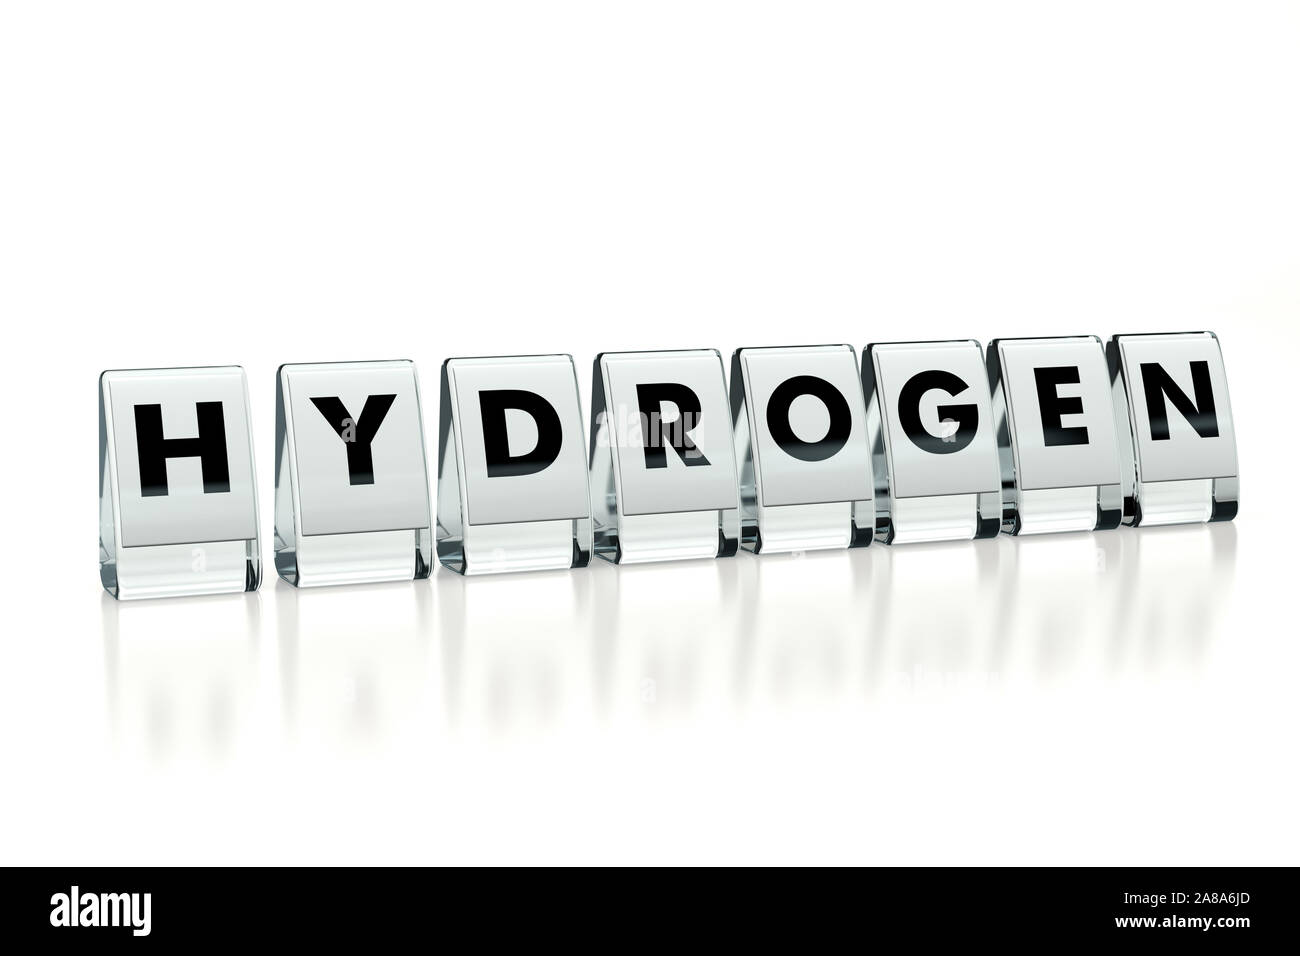 Wasserstoff Wort auf glänzenden Blöcke auf weißem Hintergrund geschrieben. Wasserstofftechnologie populärer wird mit jedem Jahr-Konzept. Abbildung: Stockfoto